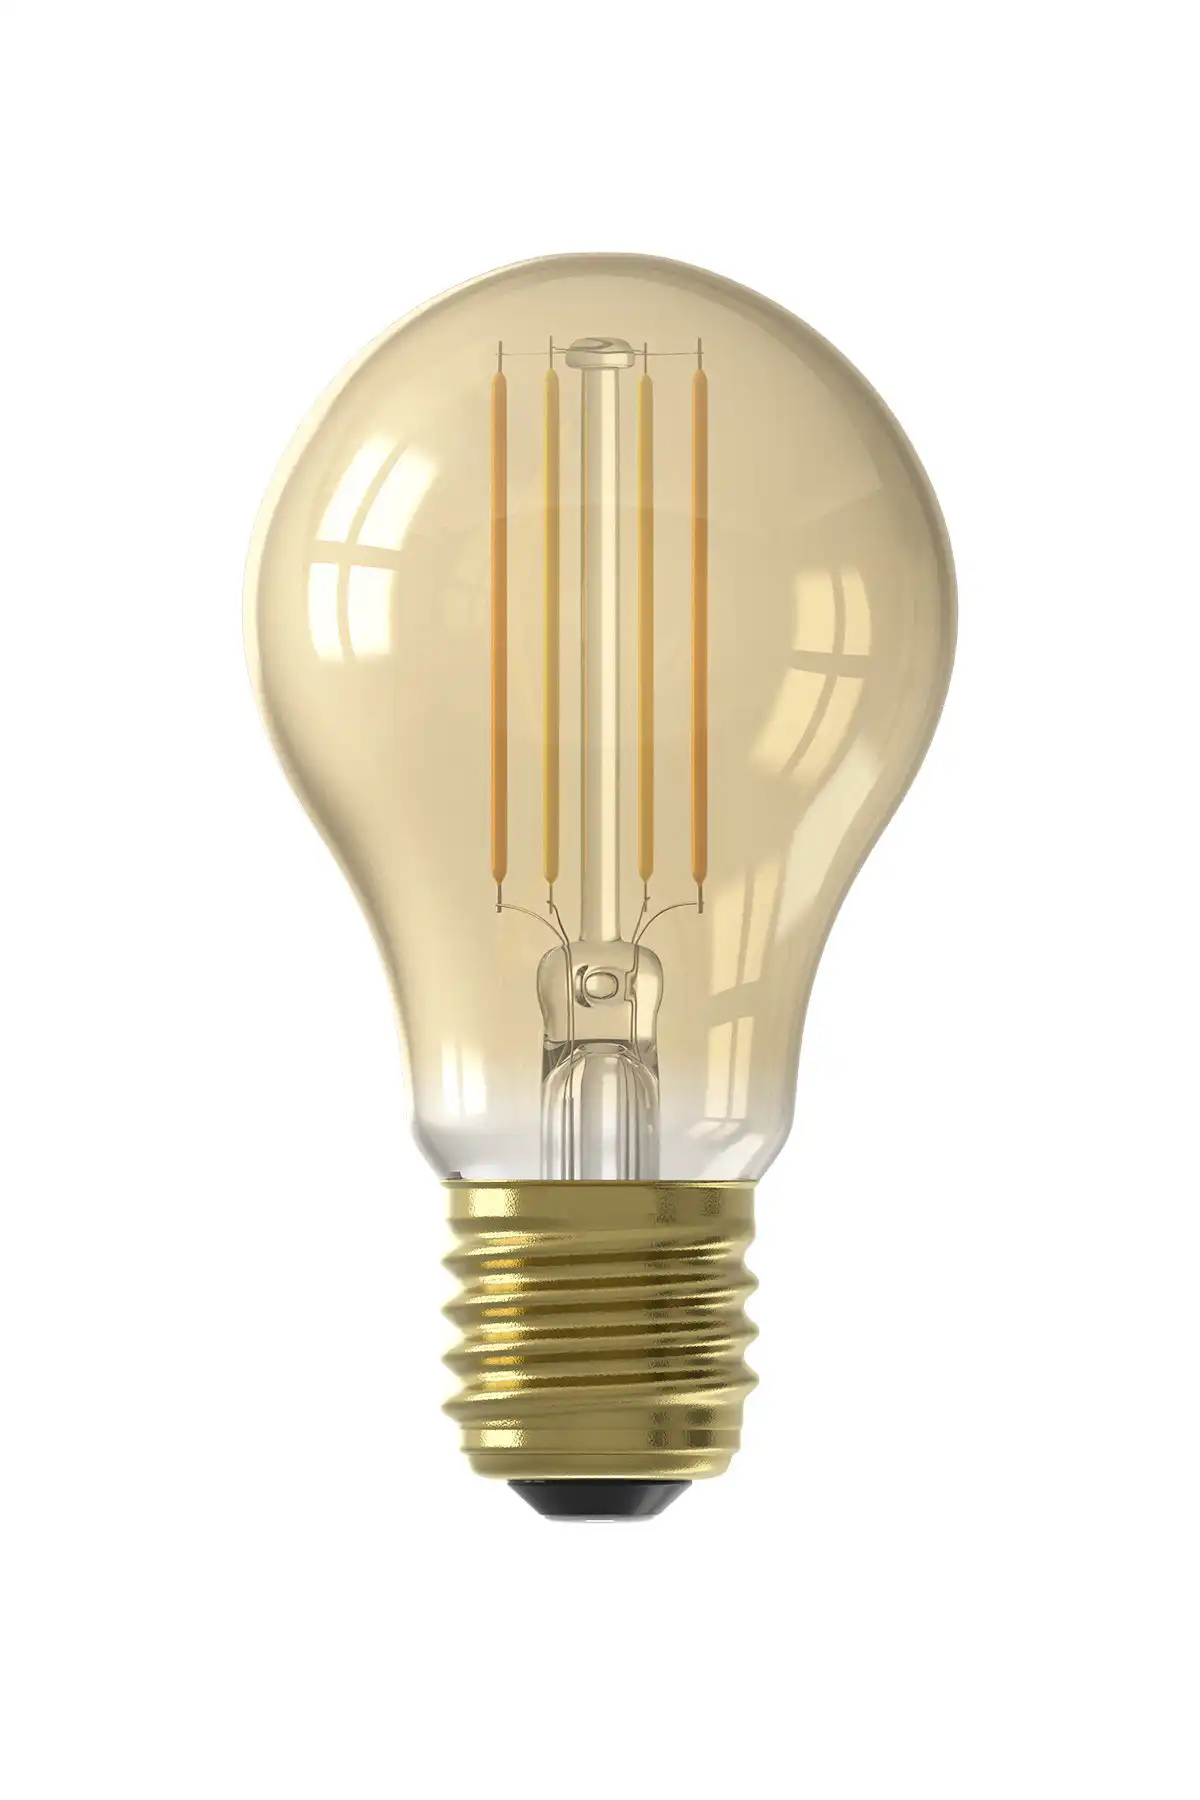 Amber filament led bulb,60w led filament bulb,Led filament bulb warm white